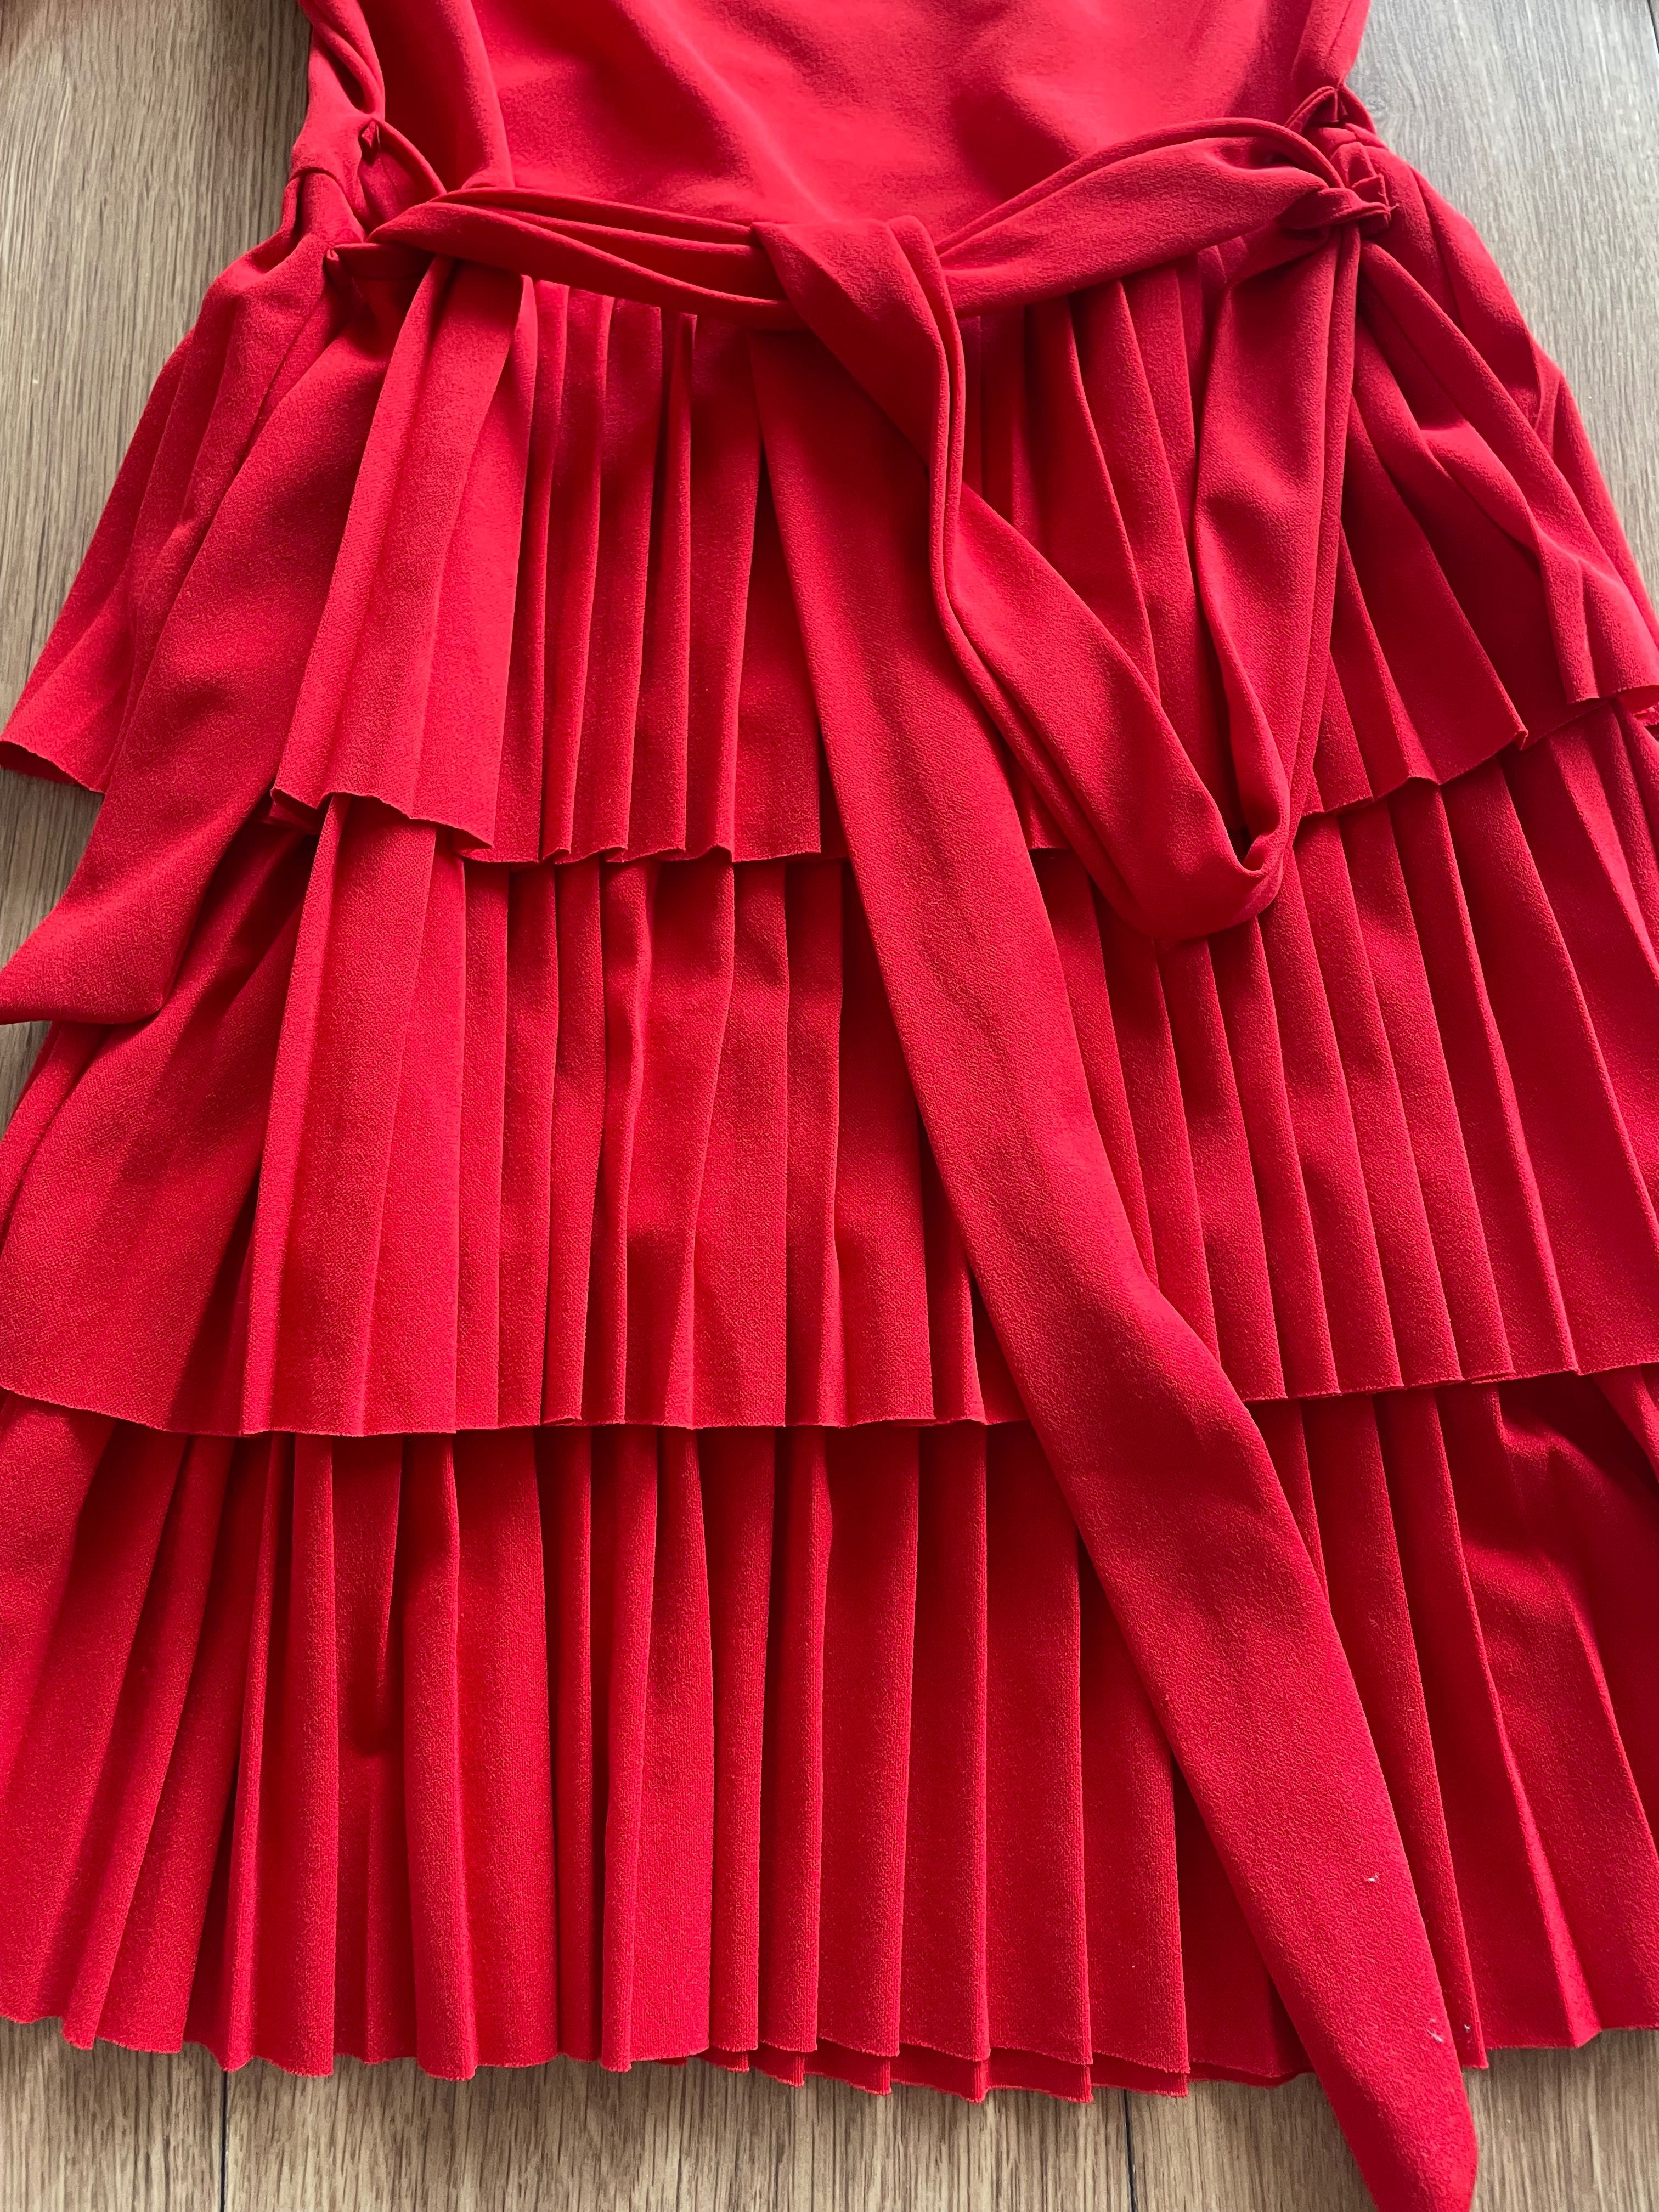 Sukienka S-M czerwona